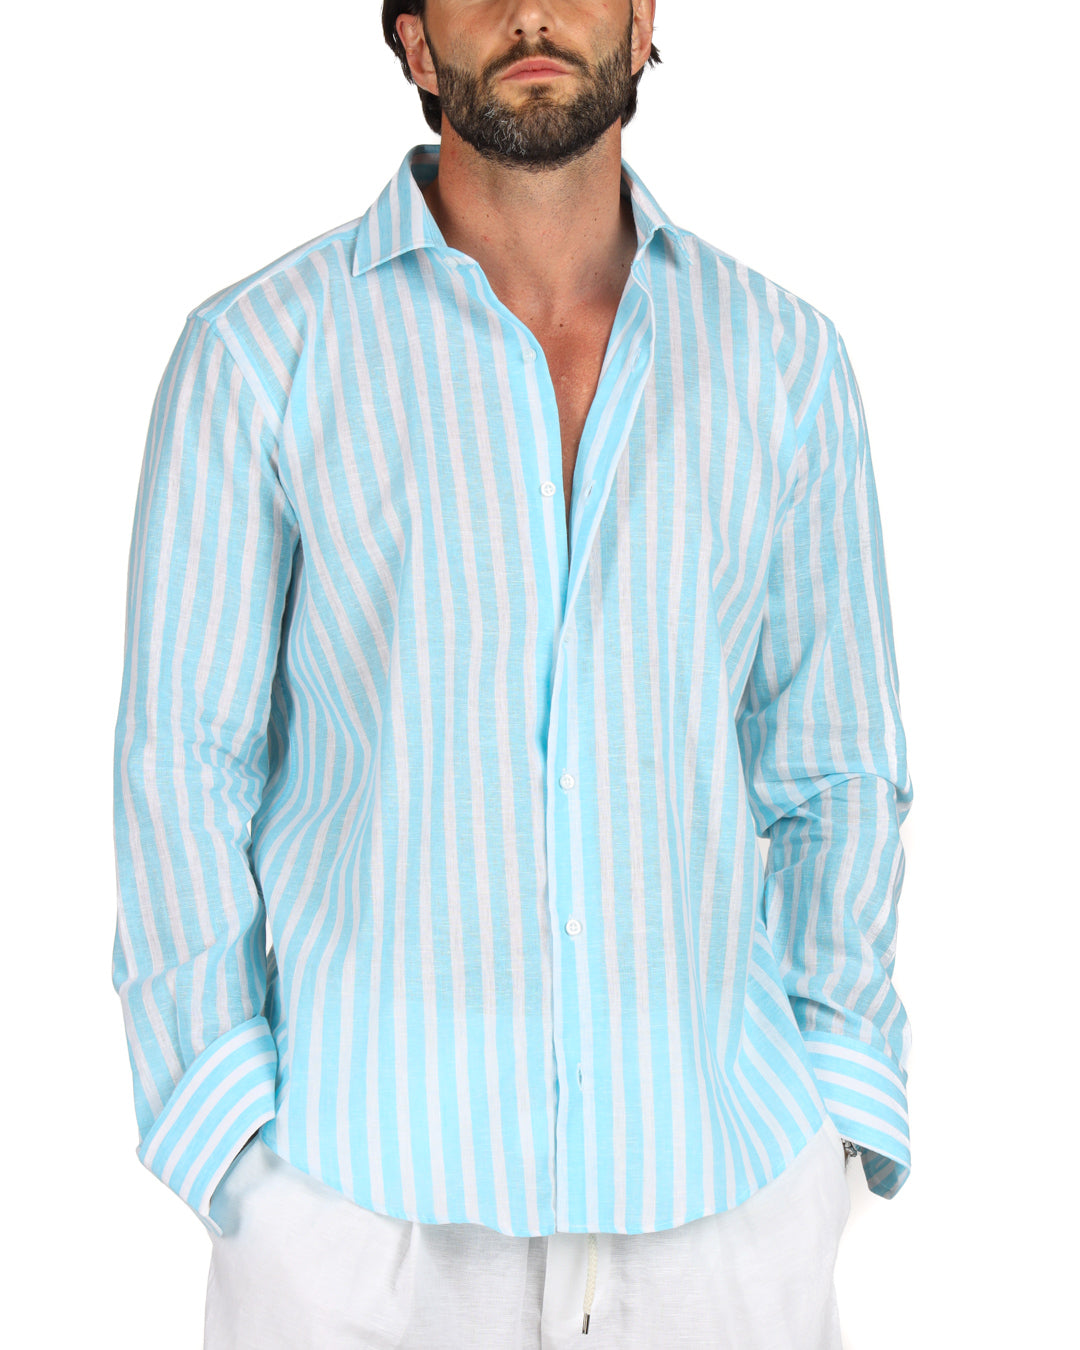 Procida - La chemise en lin classique larges rayures turquoise